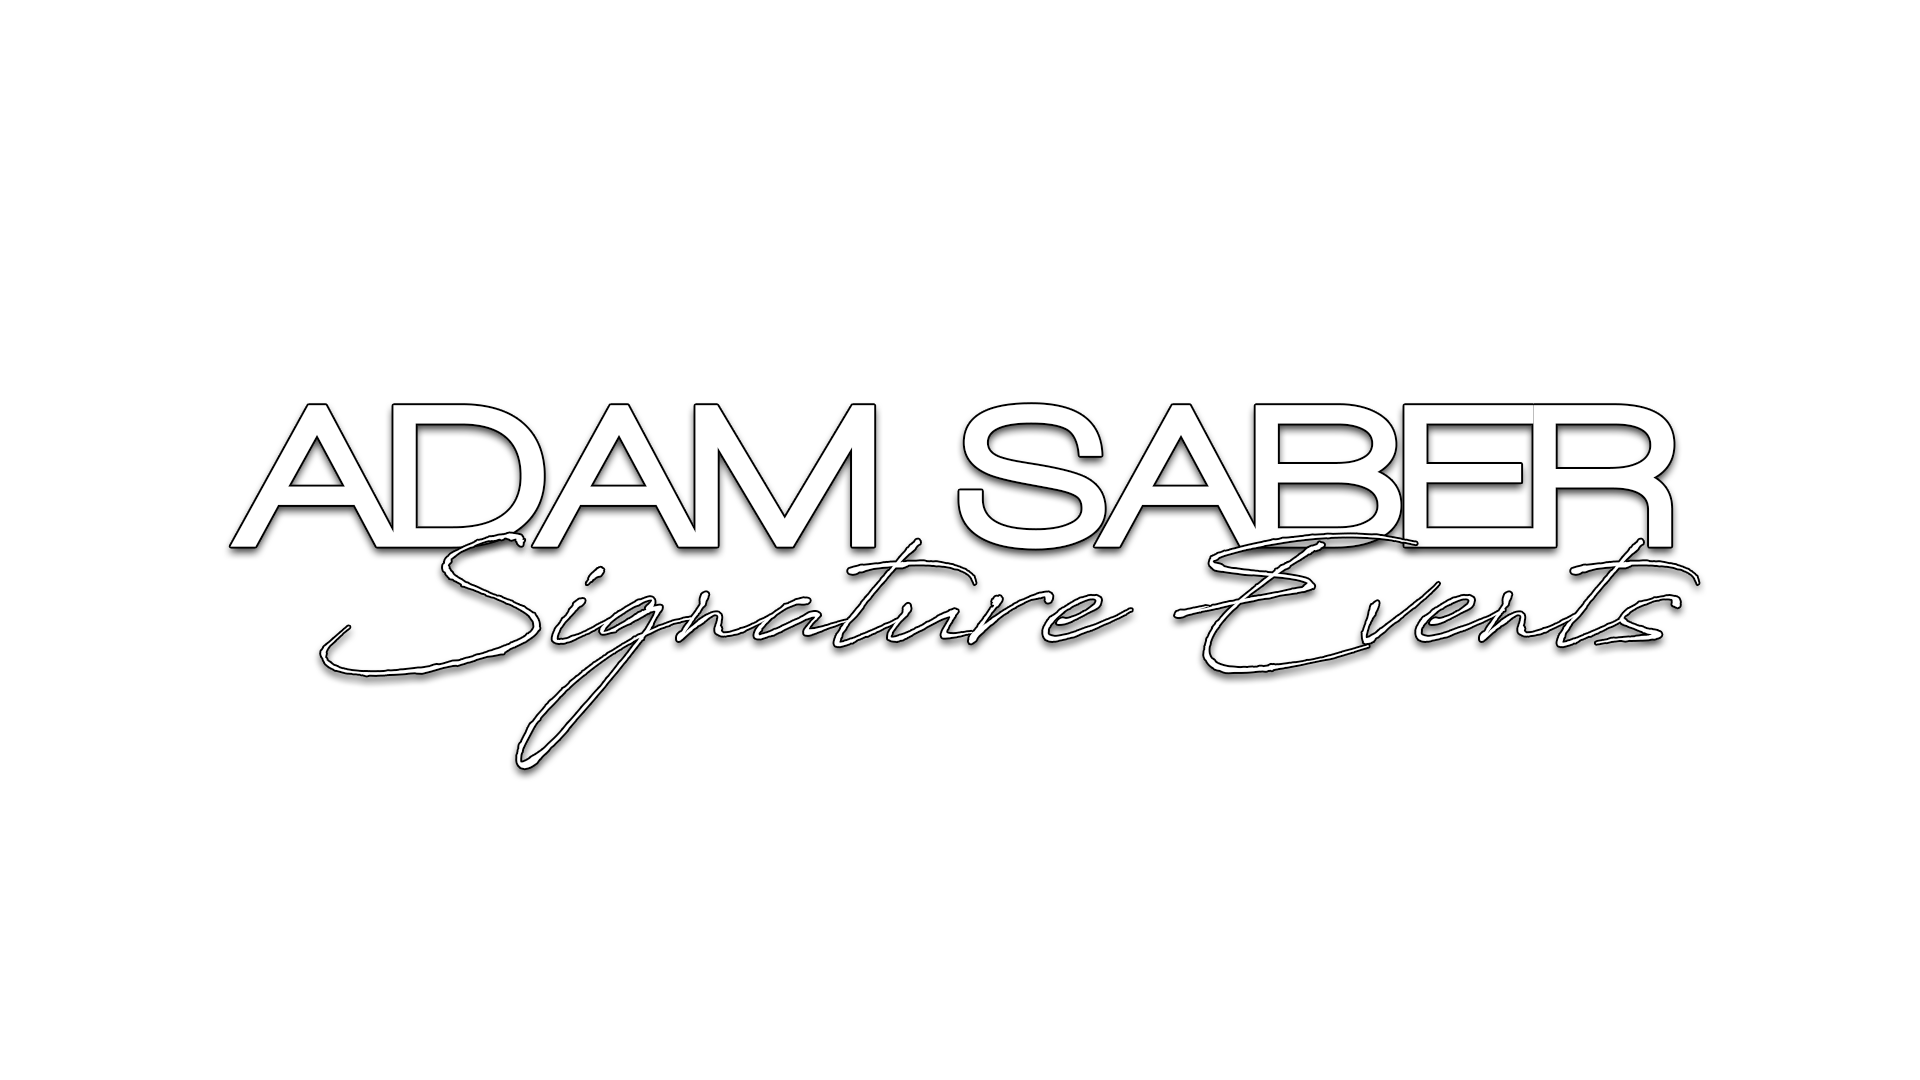 Adam Saber Signature Events